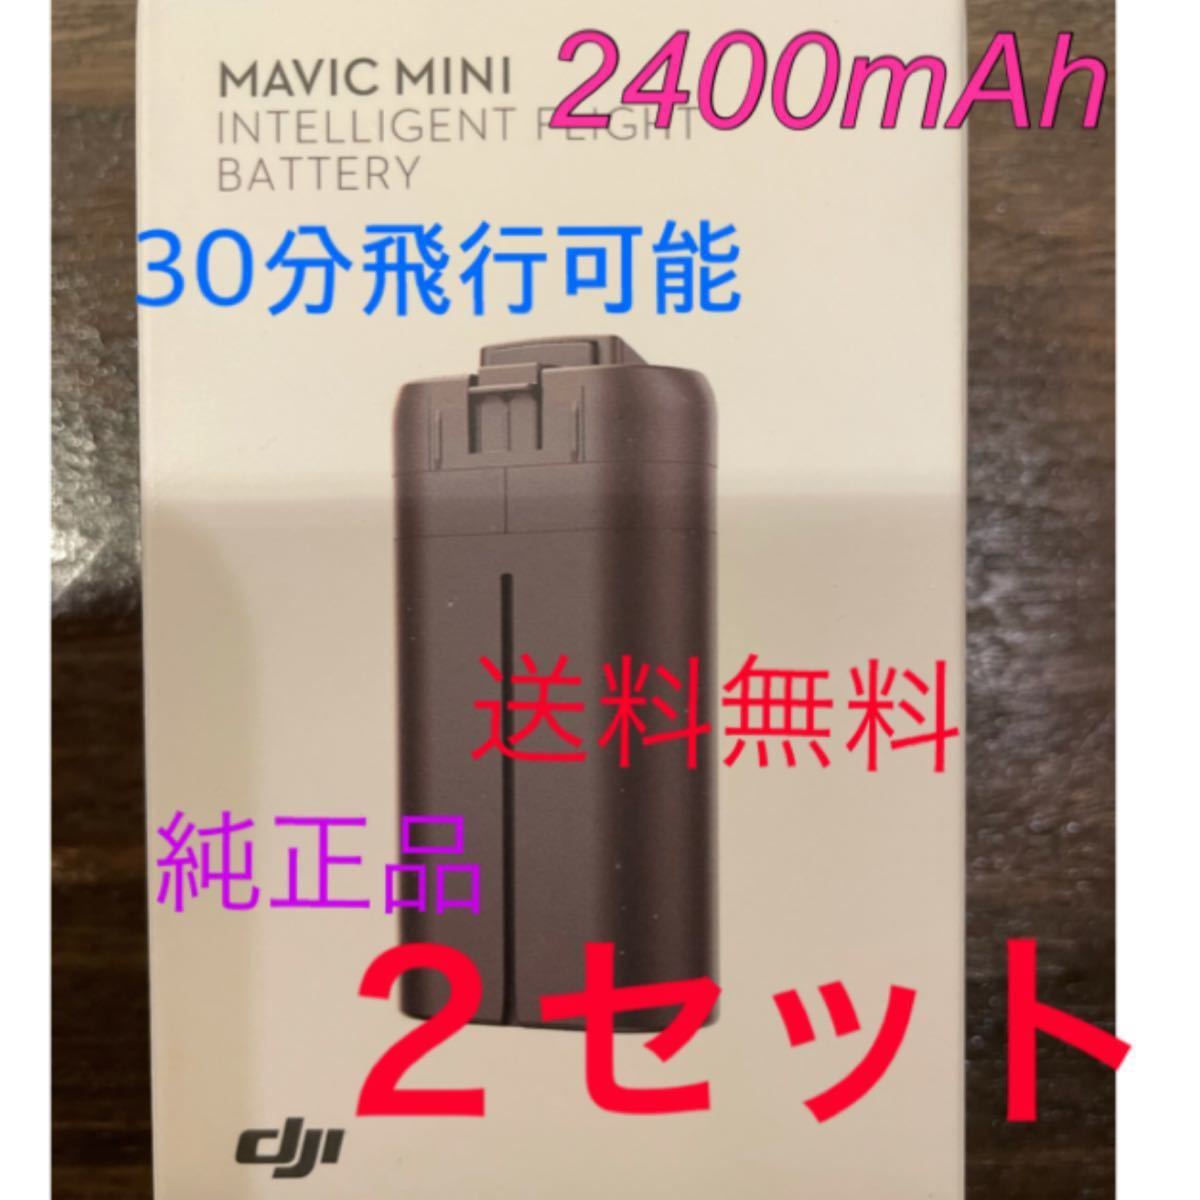 Mavic mini 、DJI mini2 2400mAh バッテリー ×2